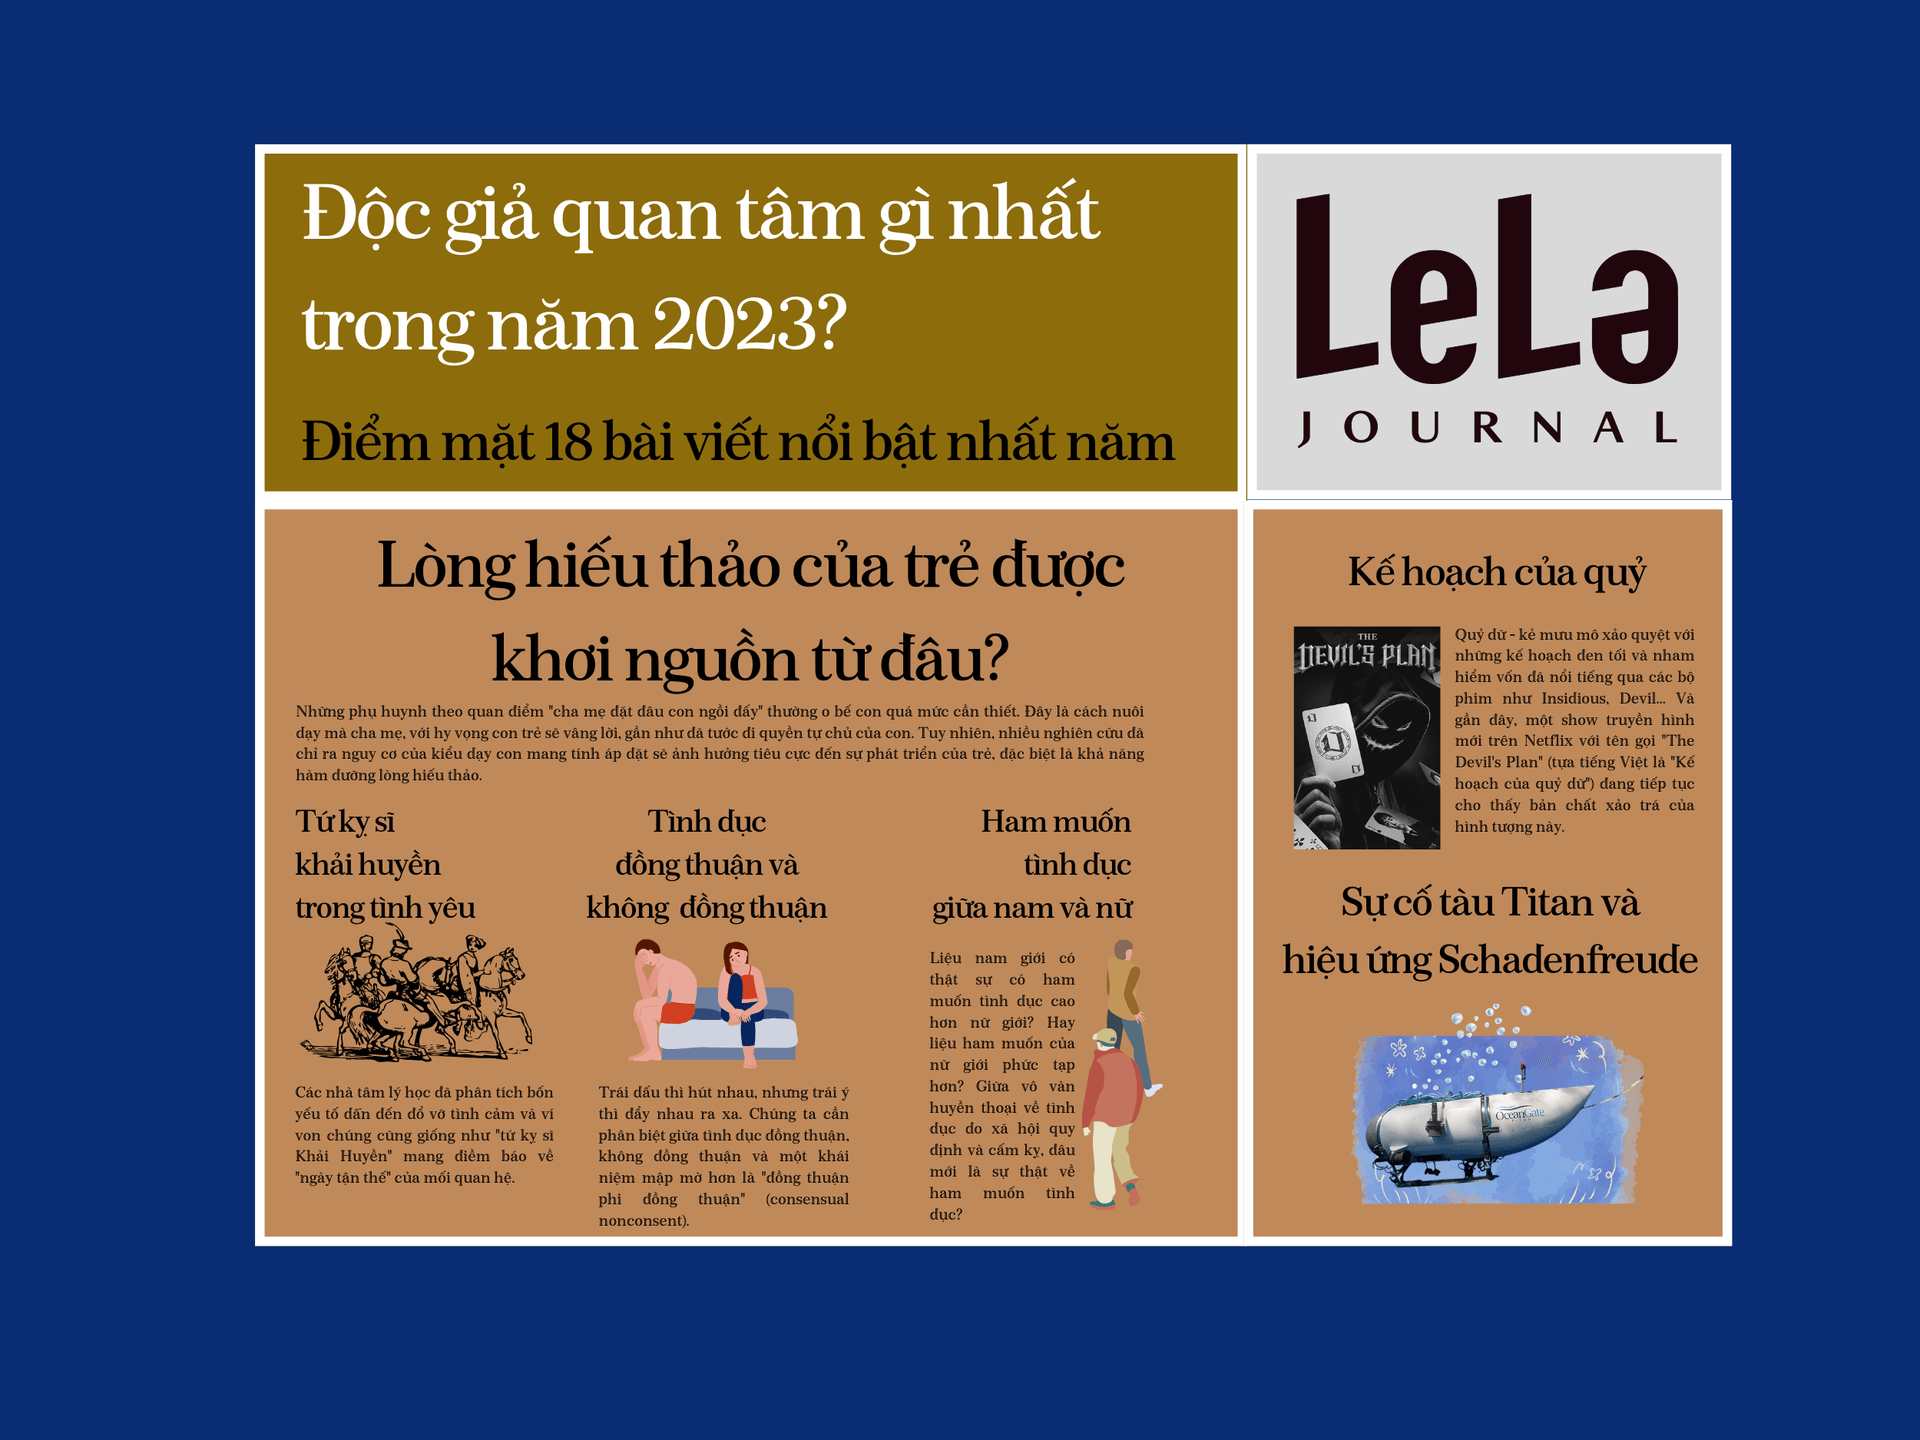 Một năm qua, độc giả LeLa Journal quan tâm điều gì nhất?